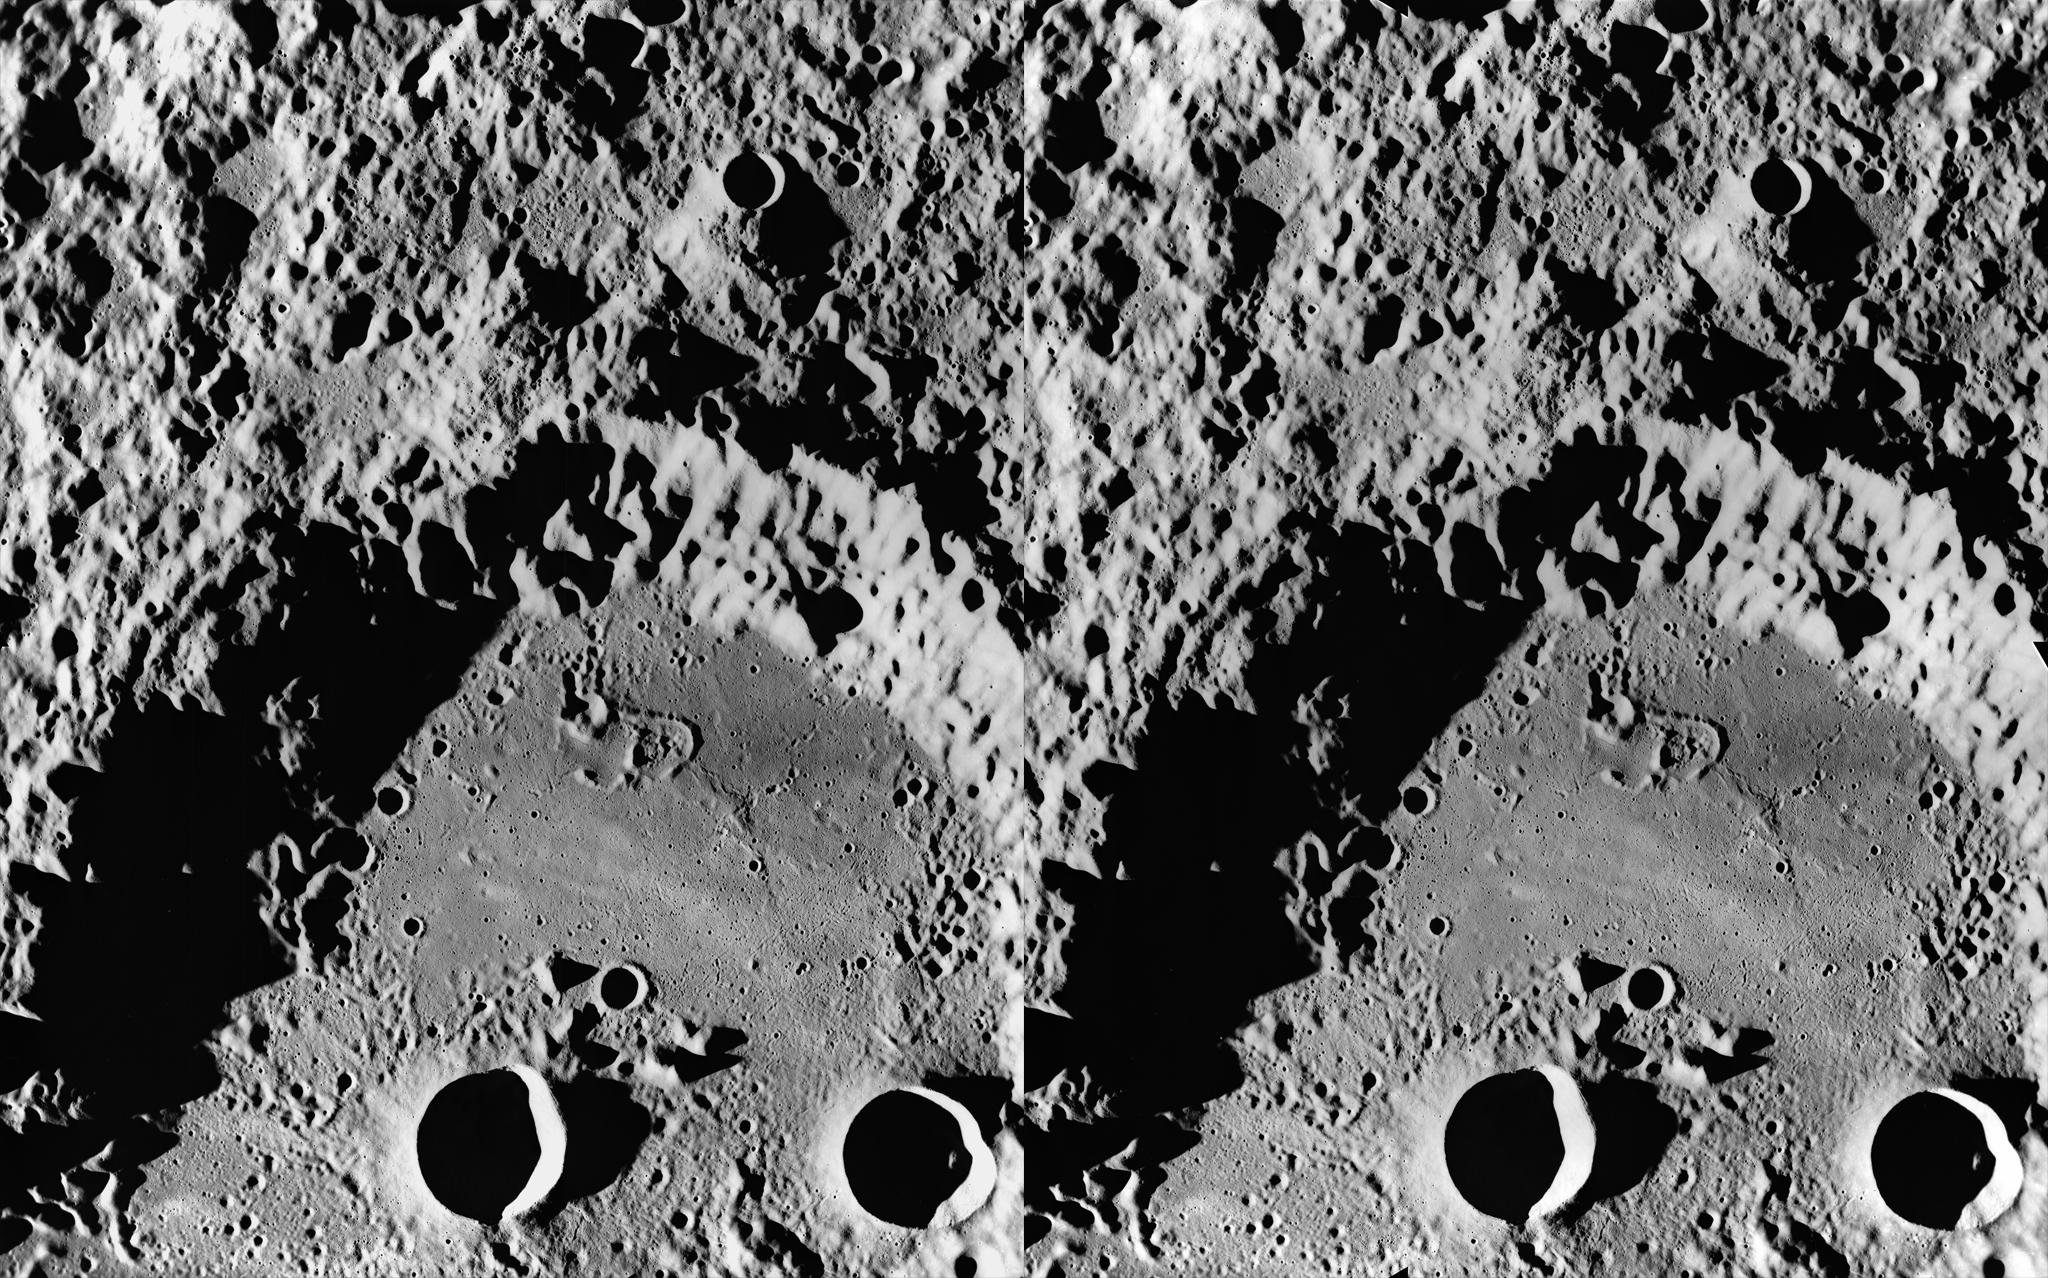 Видео обратной стороны луны. Кратер Ван де Грааф на Луне. Снимки обратной стороны Луны высокого разрешения. Обратная сторона Луны. Спутник на обратной стороне Луны.